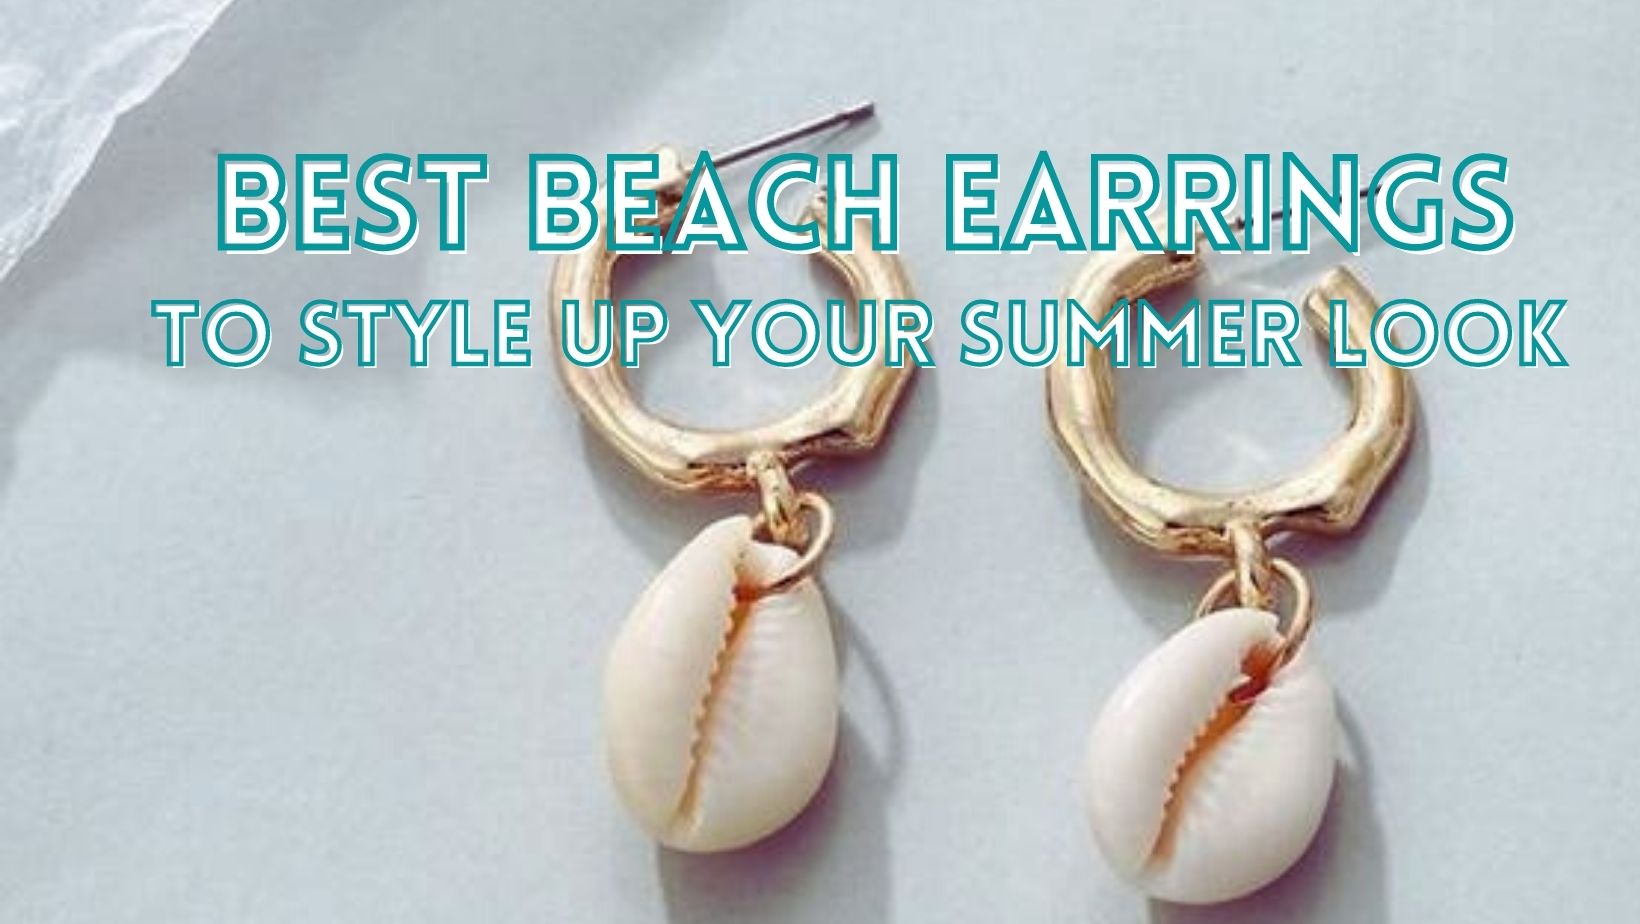 Best beach earrings